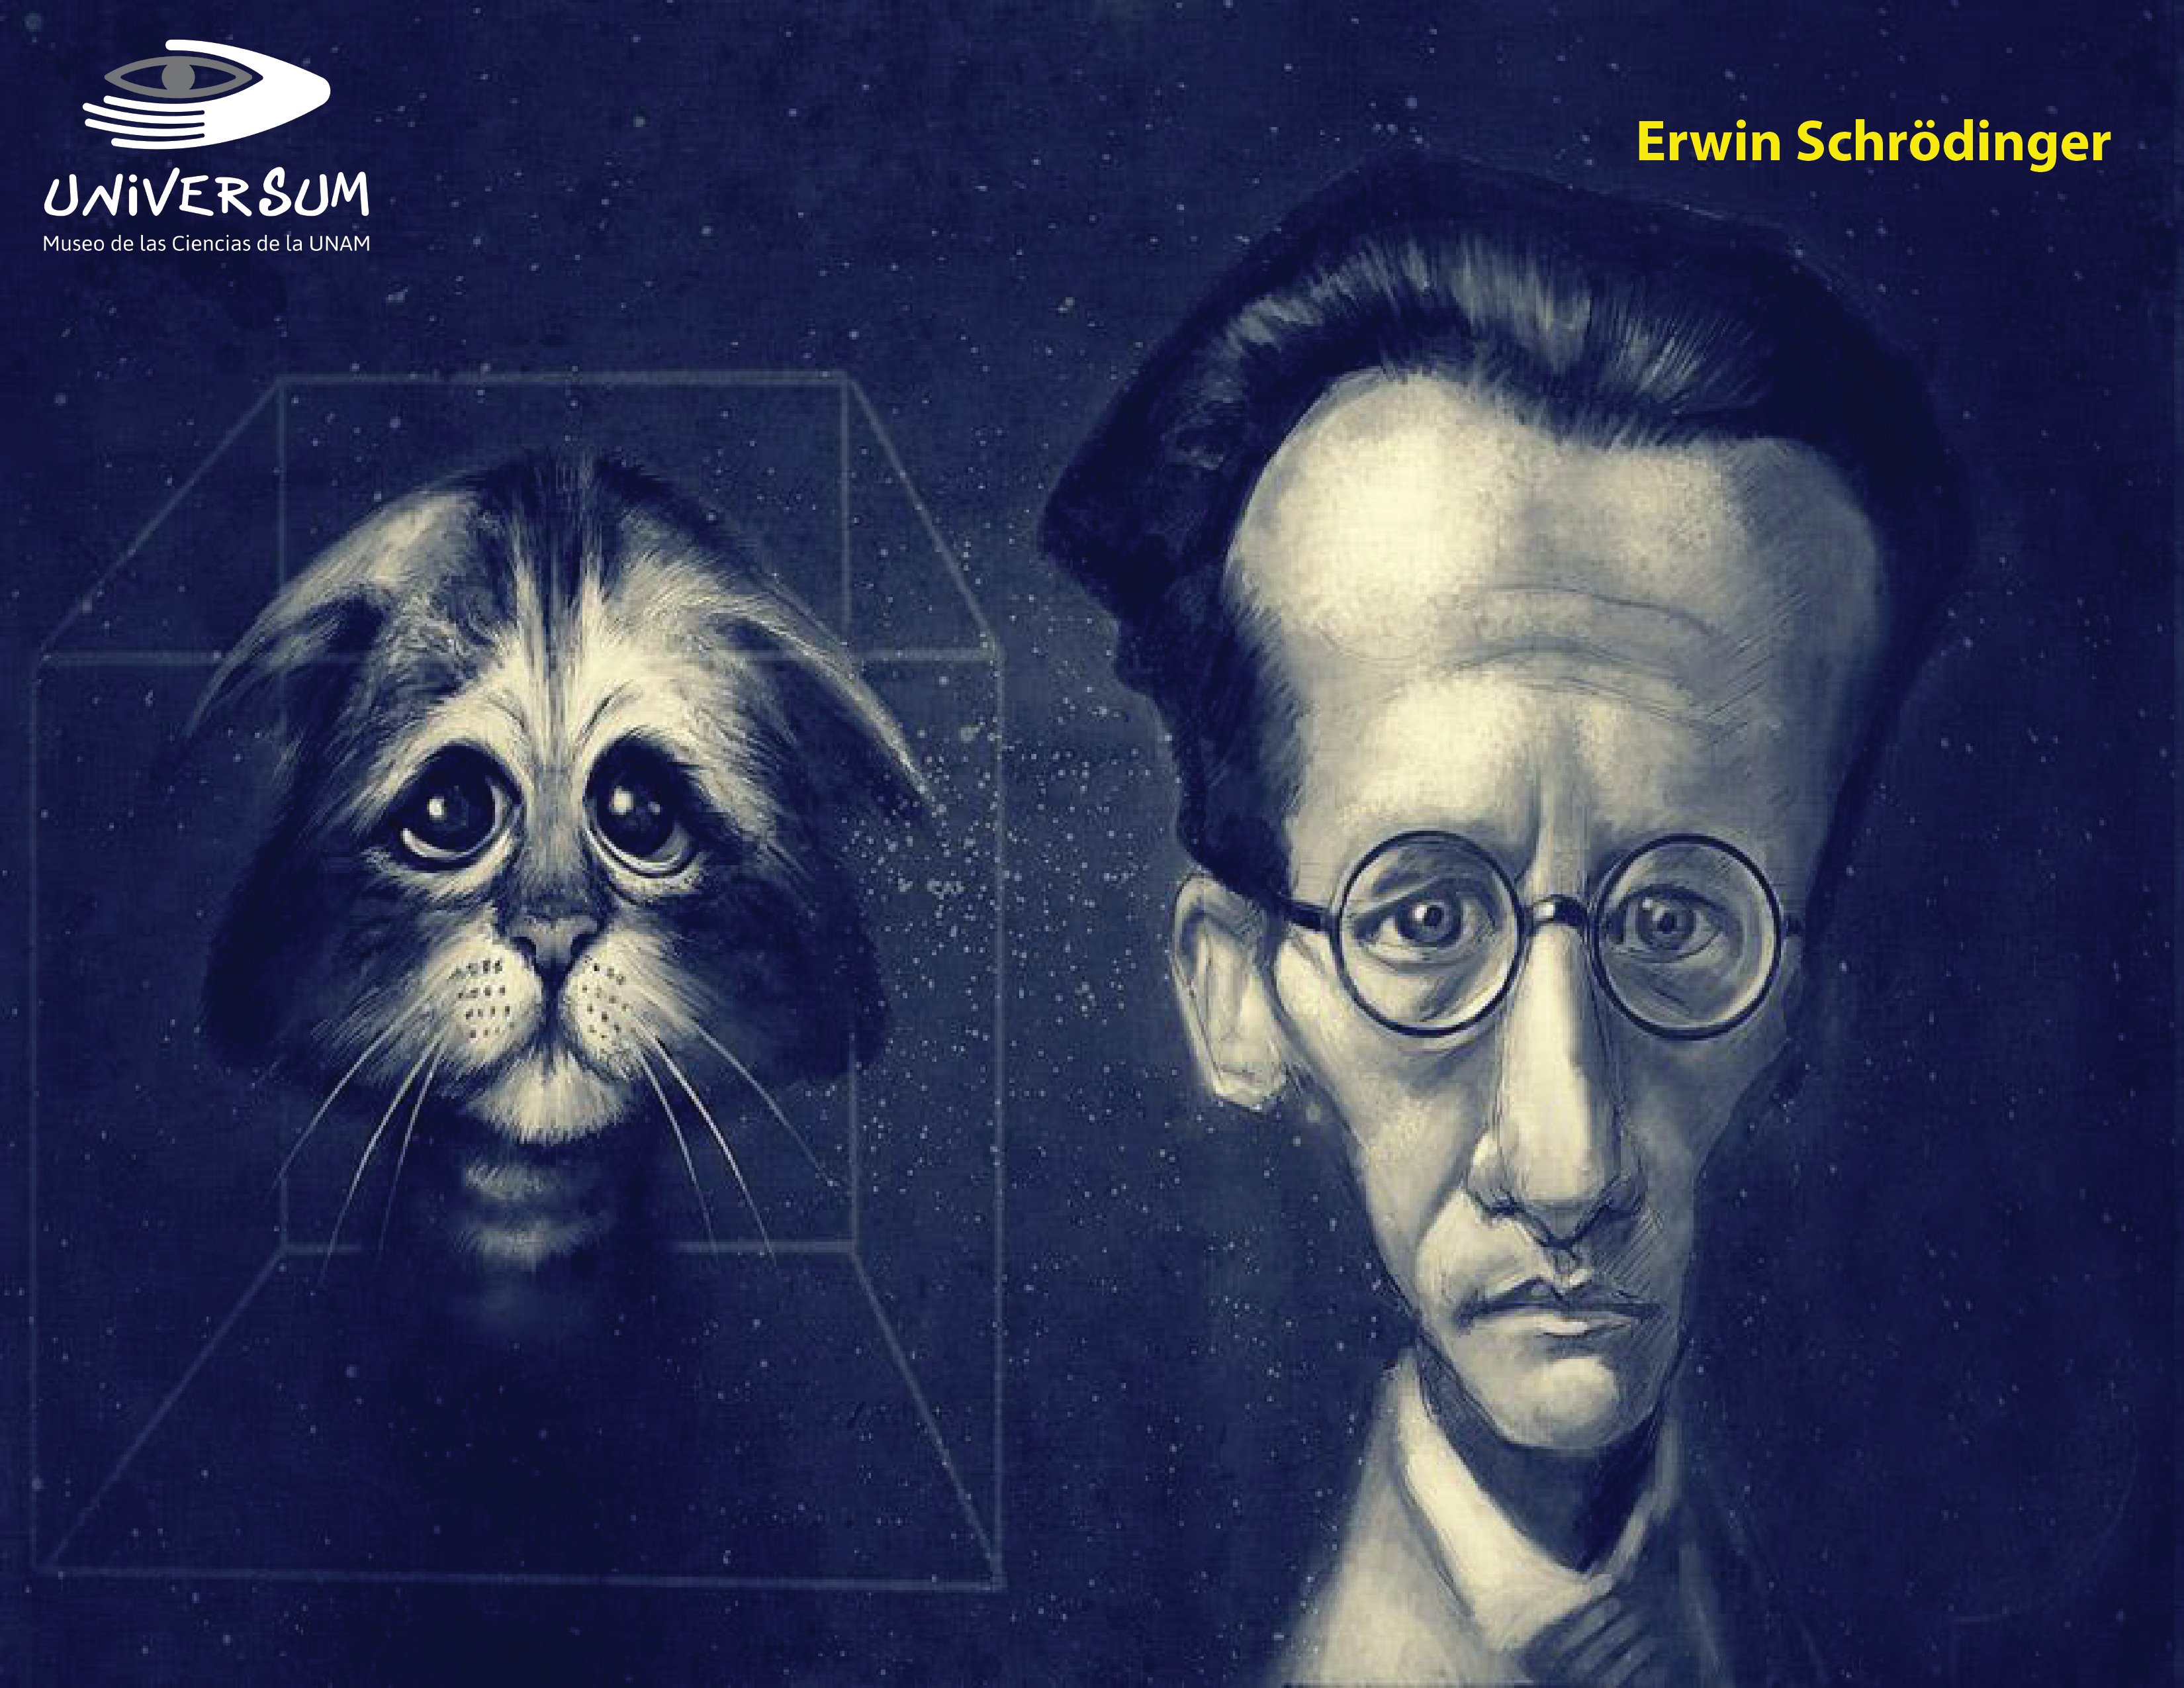 Universum Museo on Twitter: "El físico Erwin Schrödinger propuso un  experimento con un gato para ilustrar las diferencias entre interacción y  medida en el campo de la mecánica cuántica. Murió #UnDíaComoHoy de